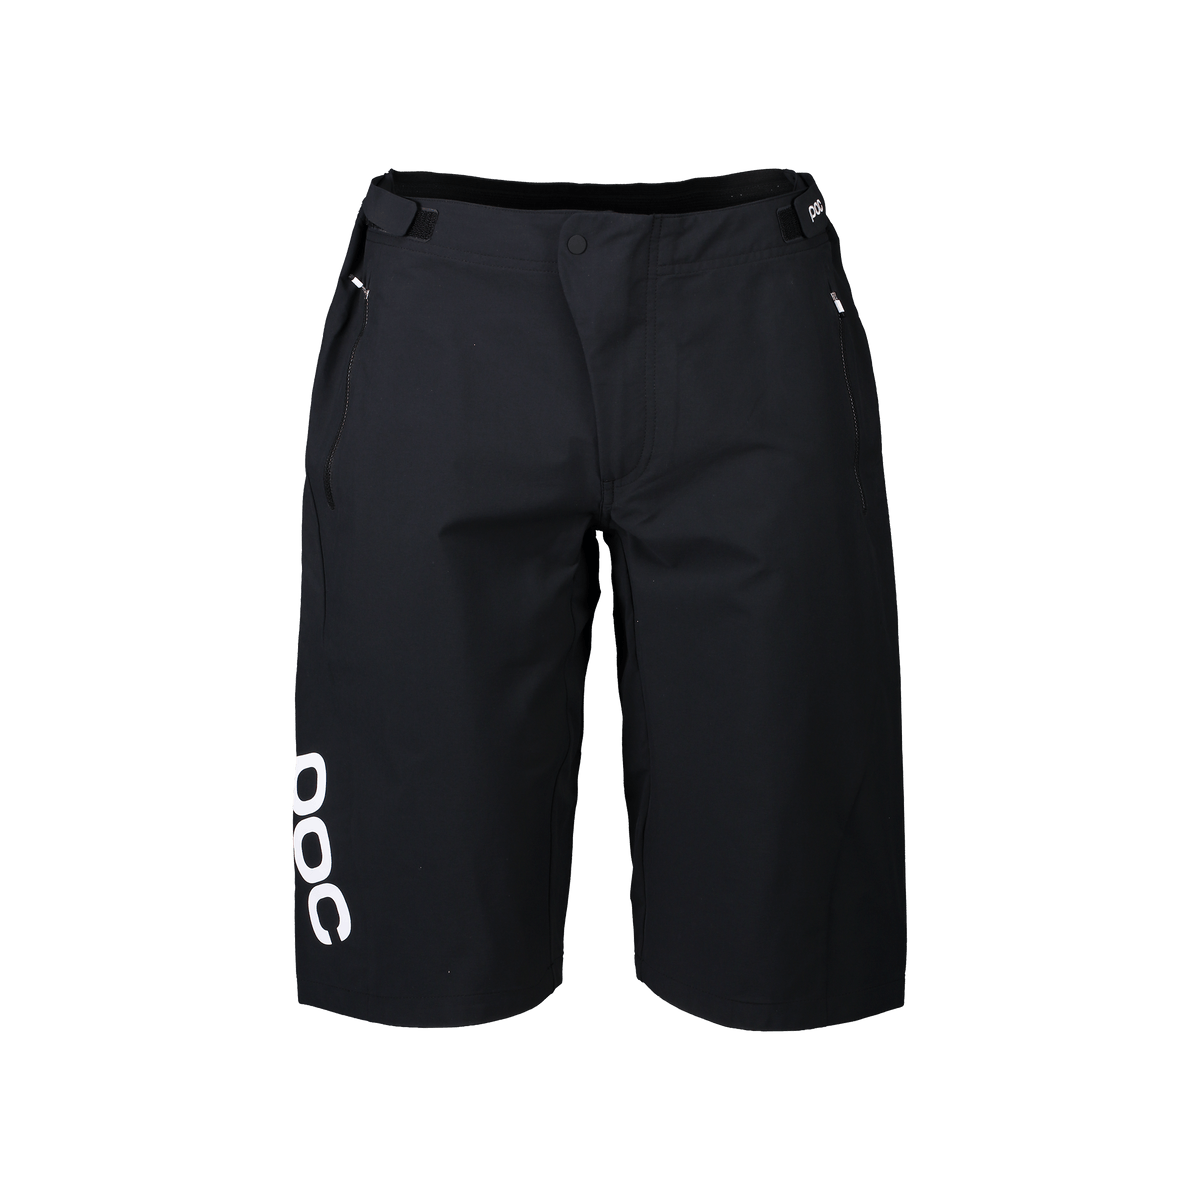 POC Women's Essential Enduro Shorts